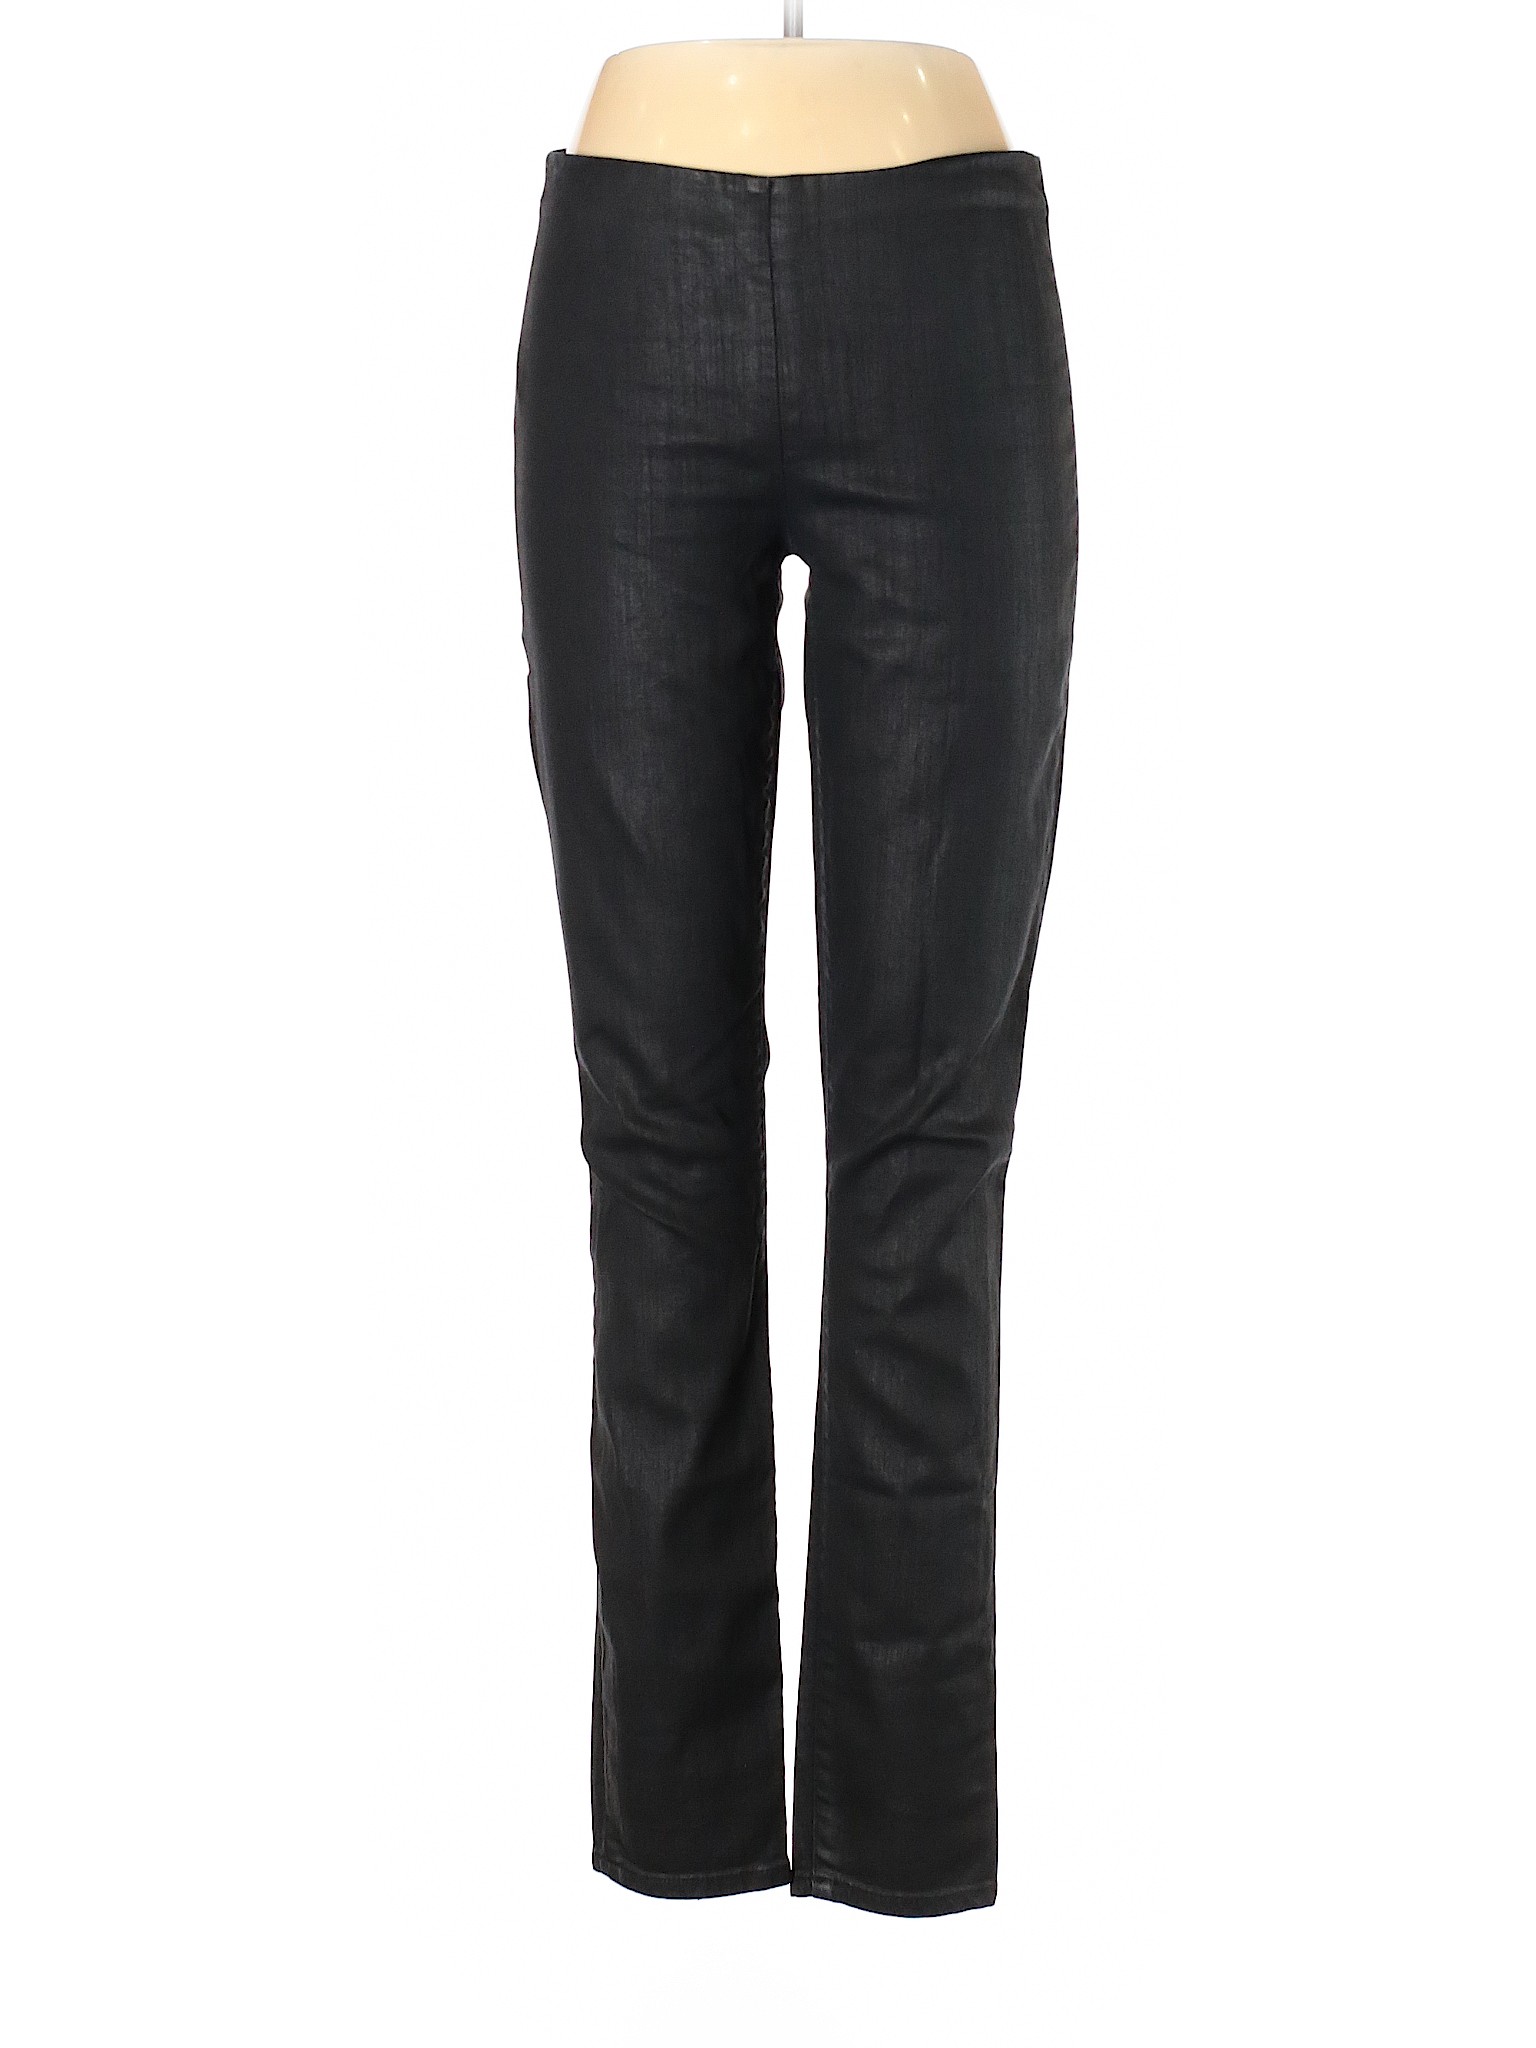 Gap Women Black Jeans 30 W Tall | eBay